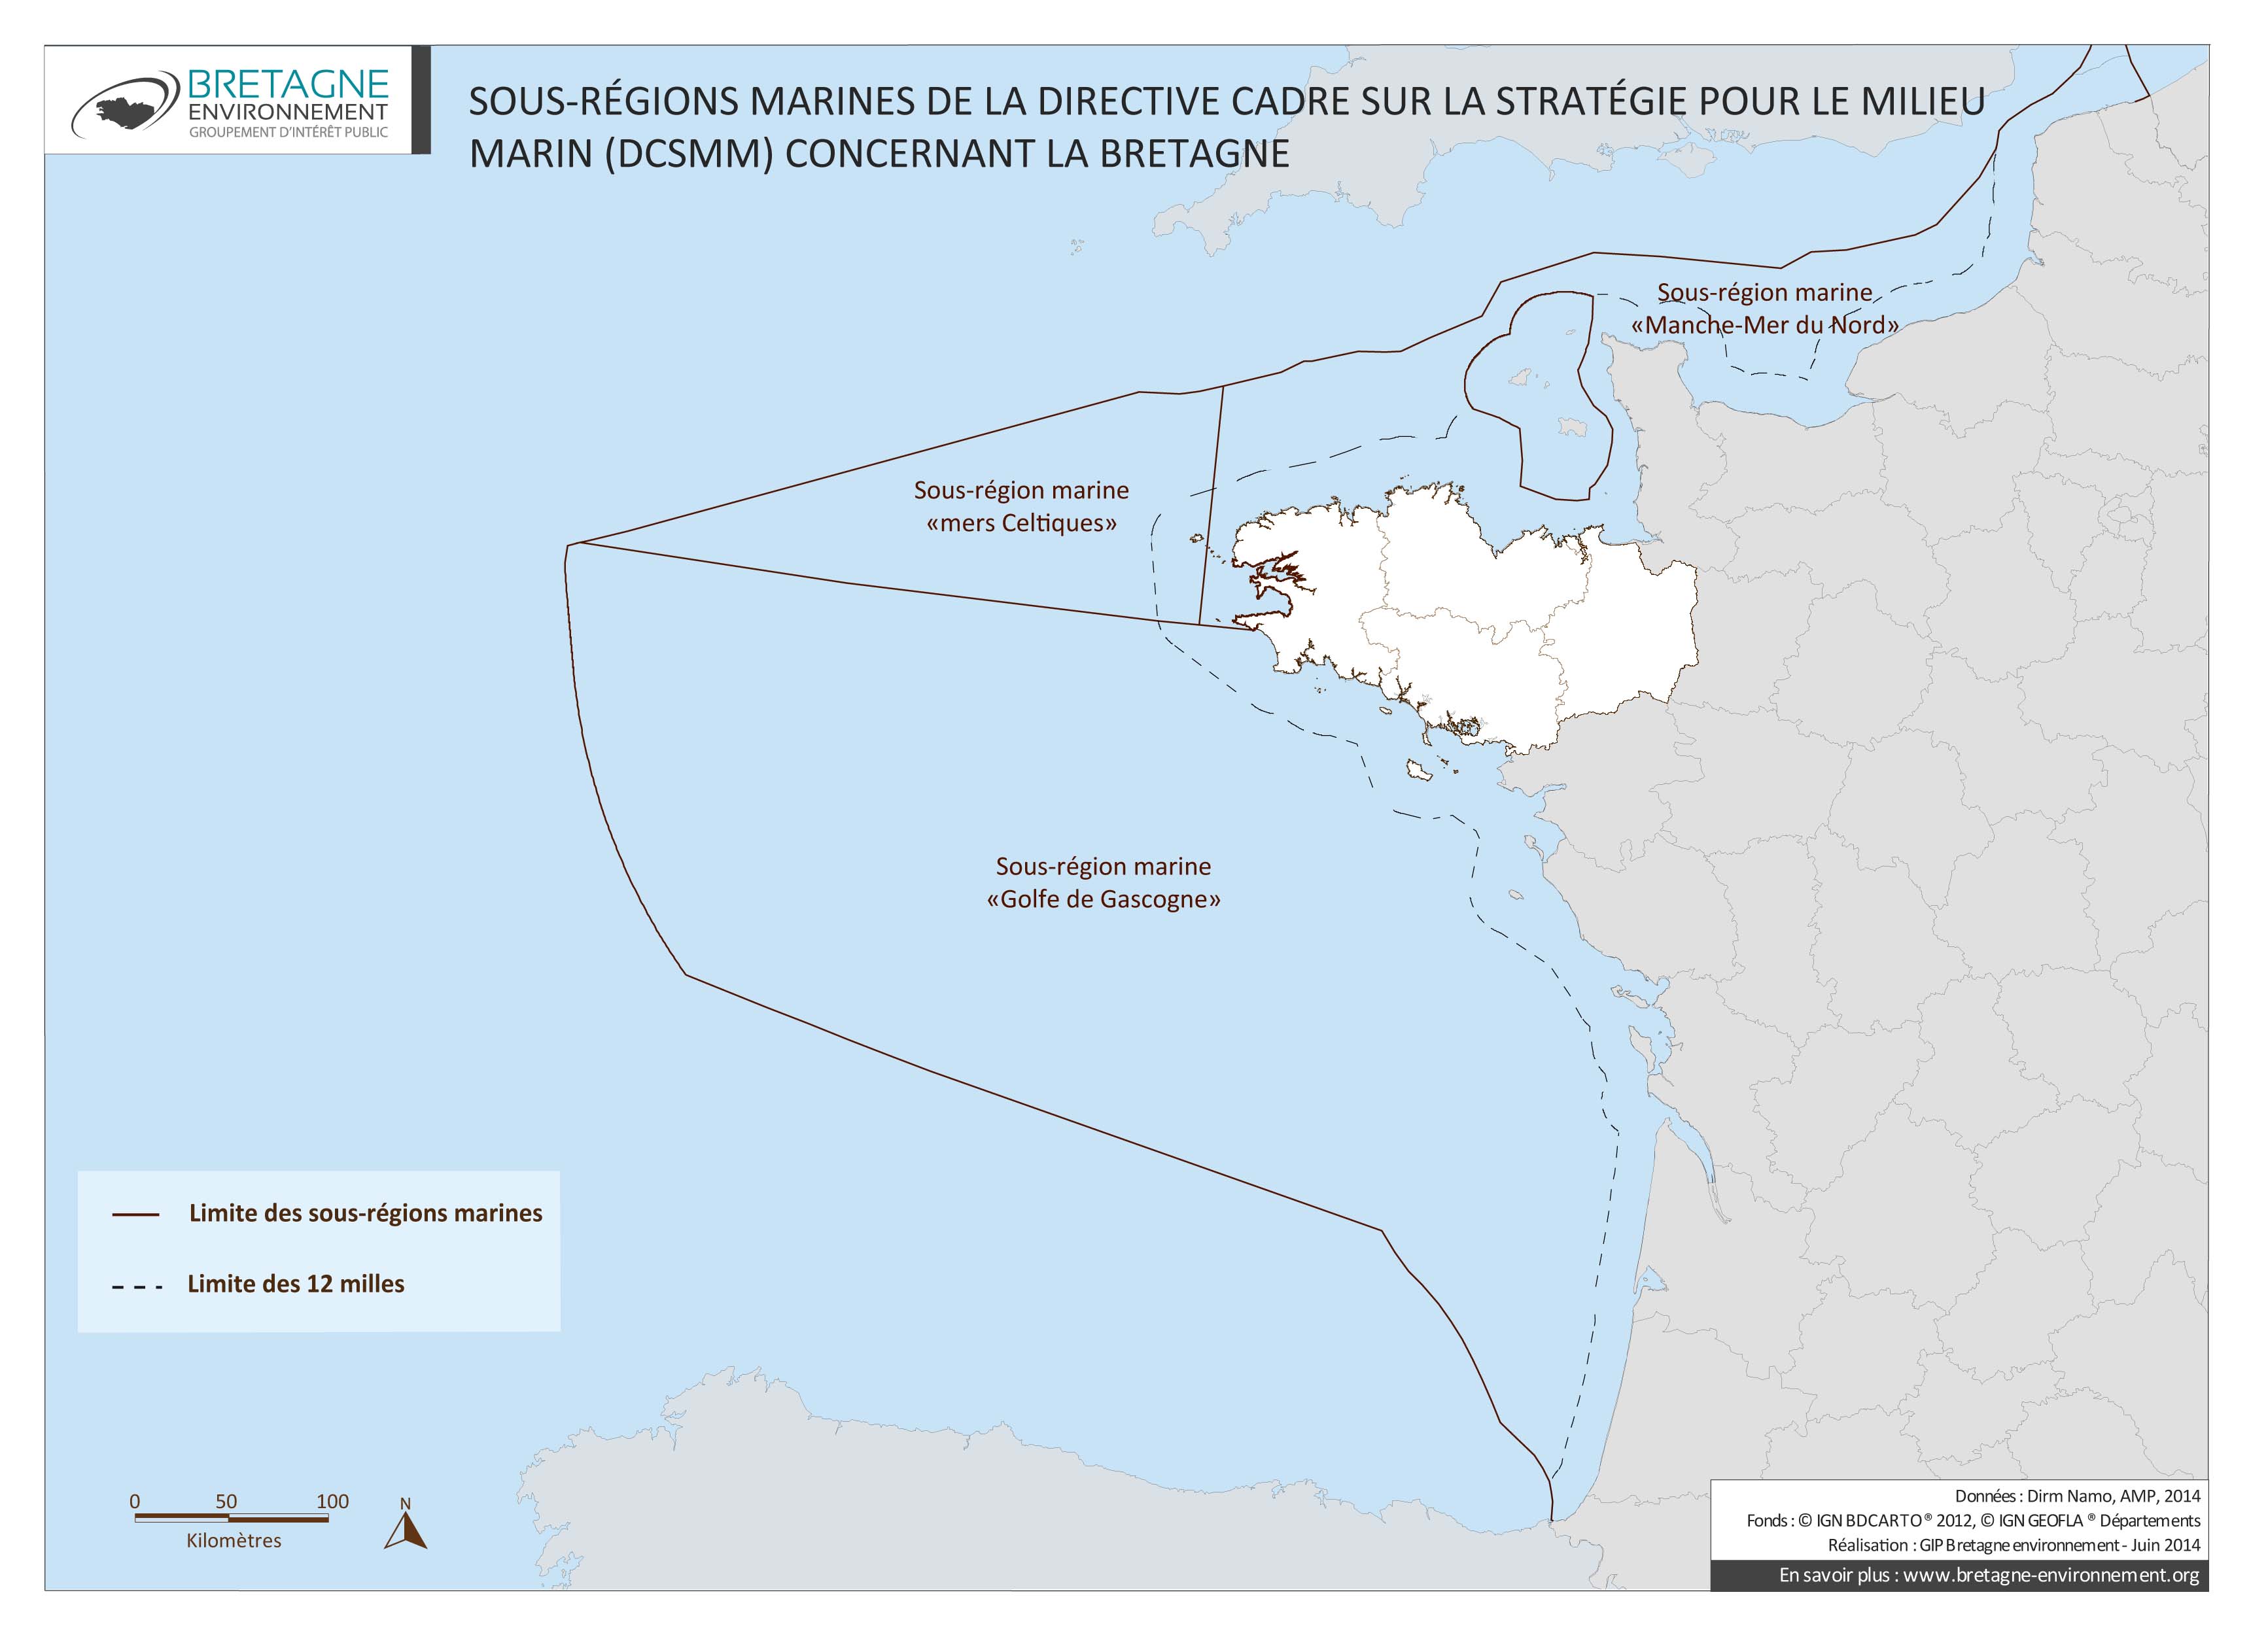 Sous-régions marines de la Directive cadre sur la stratégie pour le milieu marin concernant la Bretagne